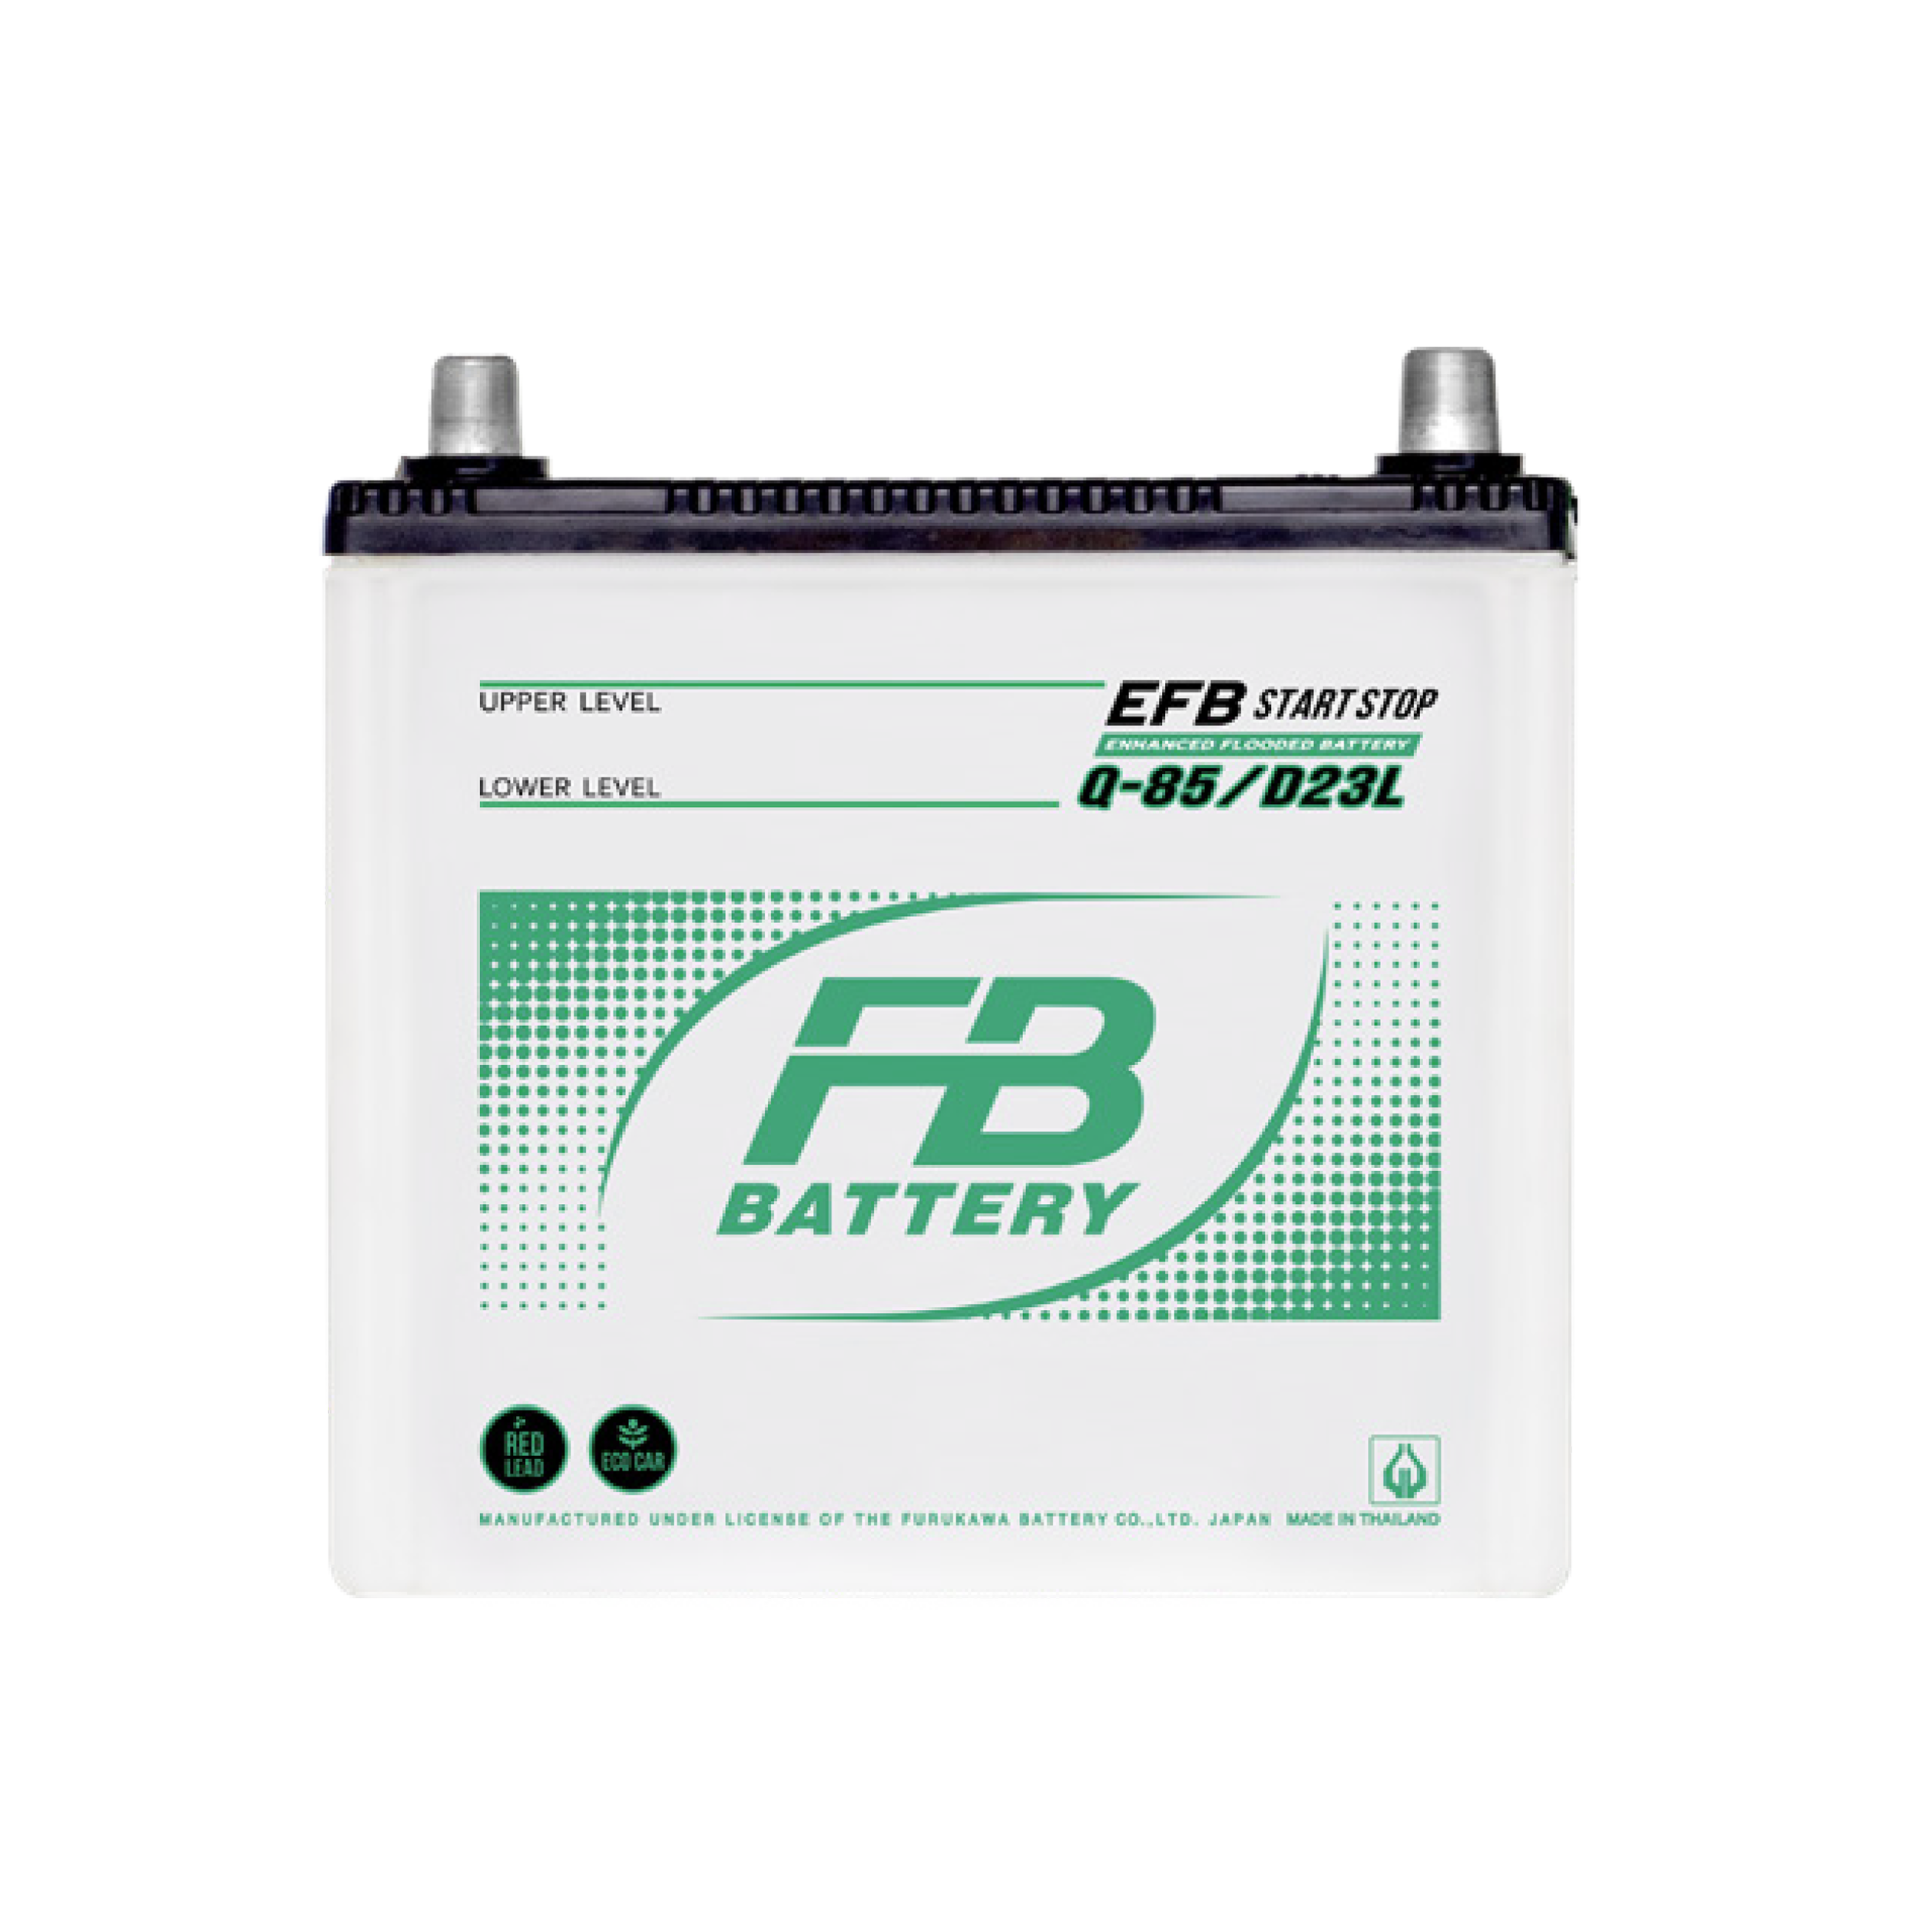 Starter battery EFB, 12 V, 70 Ah 